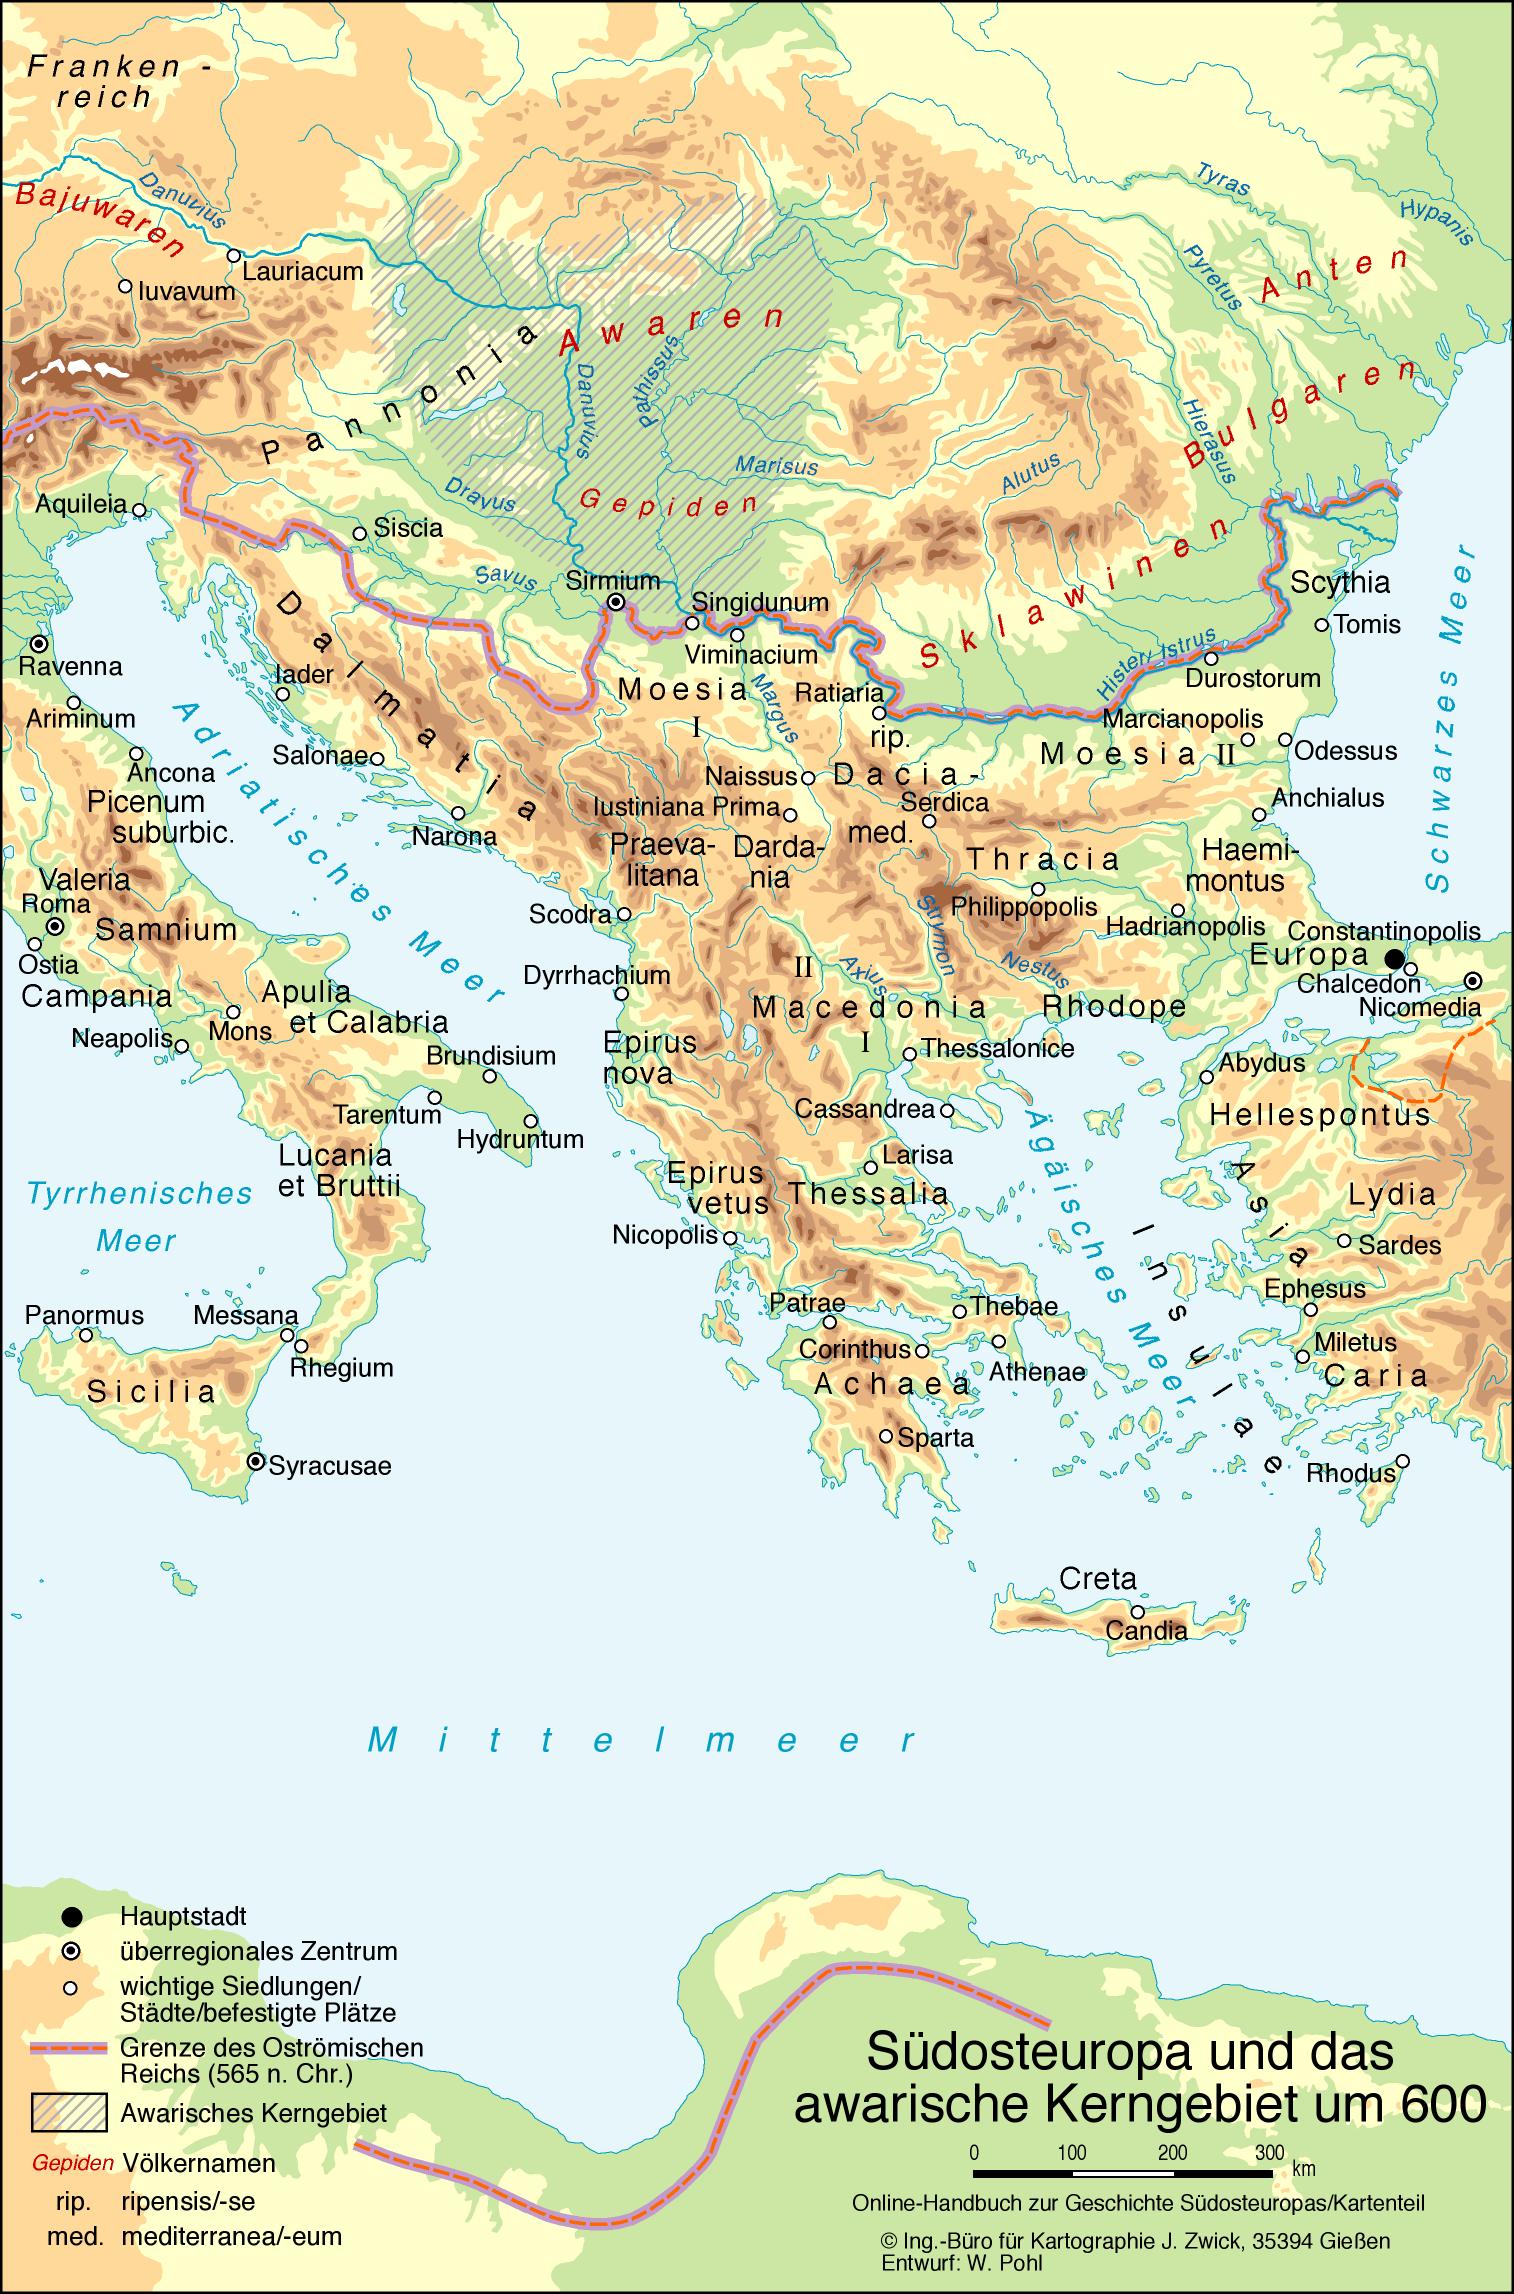 Südosteuropa und das awarische Kerngebiet um 600